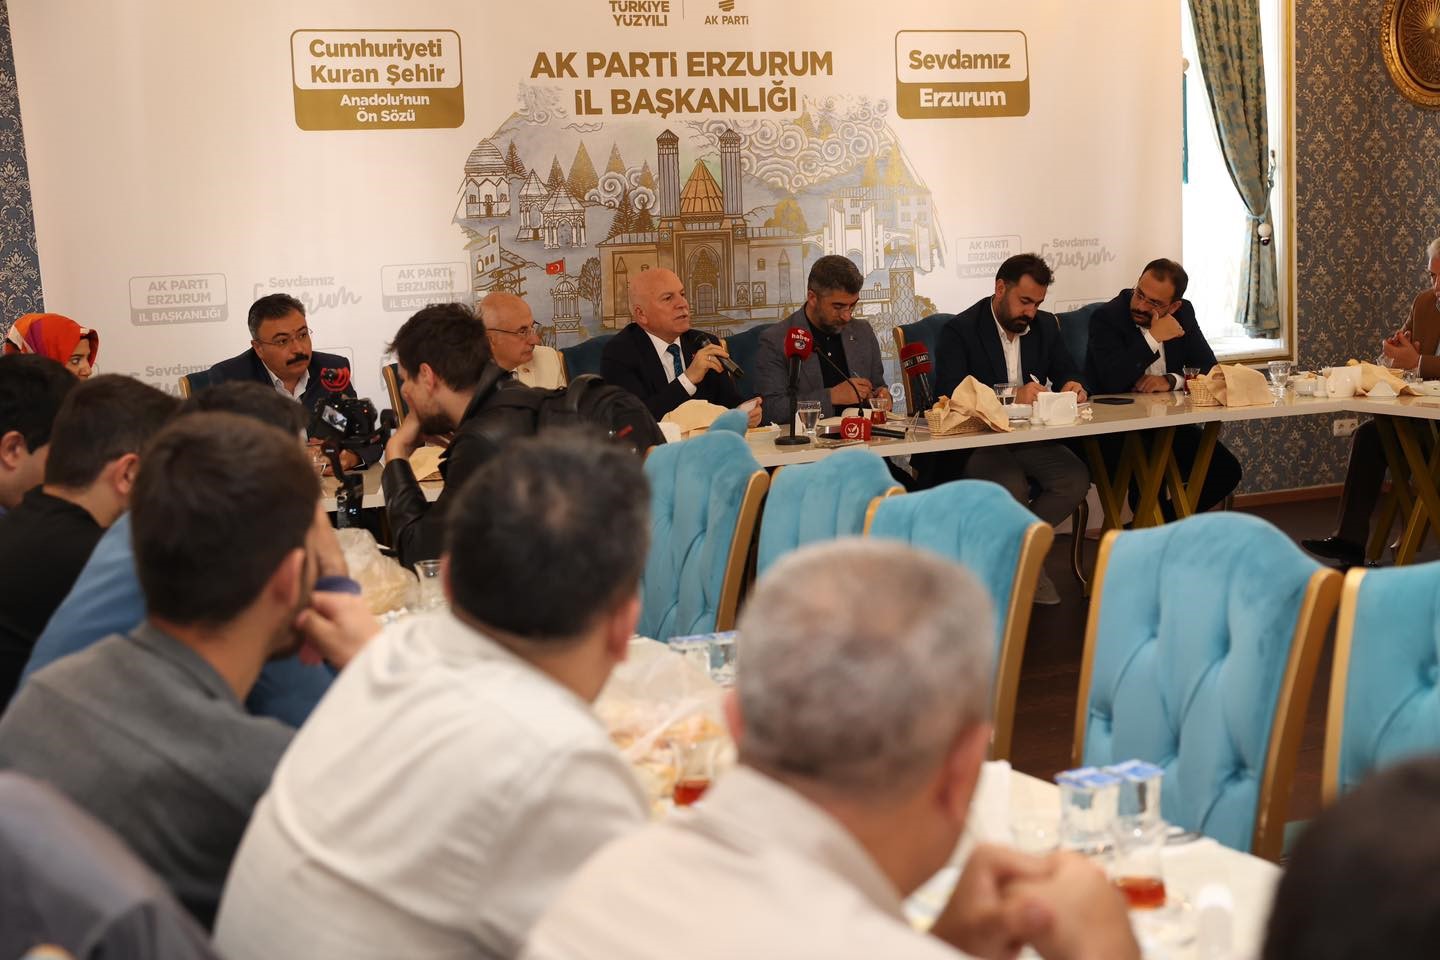 Başkan Küçükoğlu’ndan Erzurum projeksiyonu
